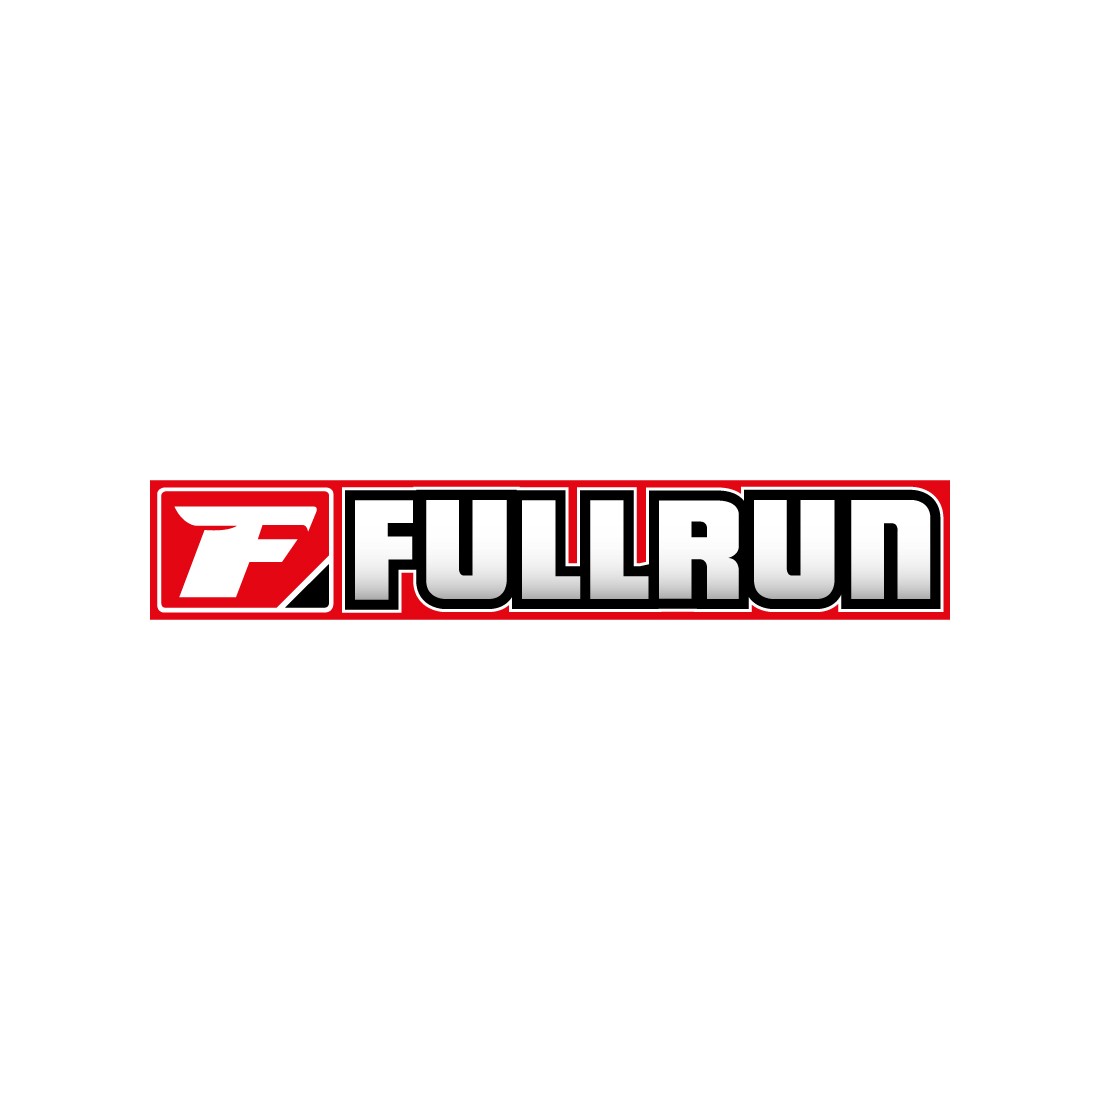 FULL RUN